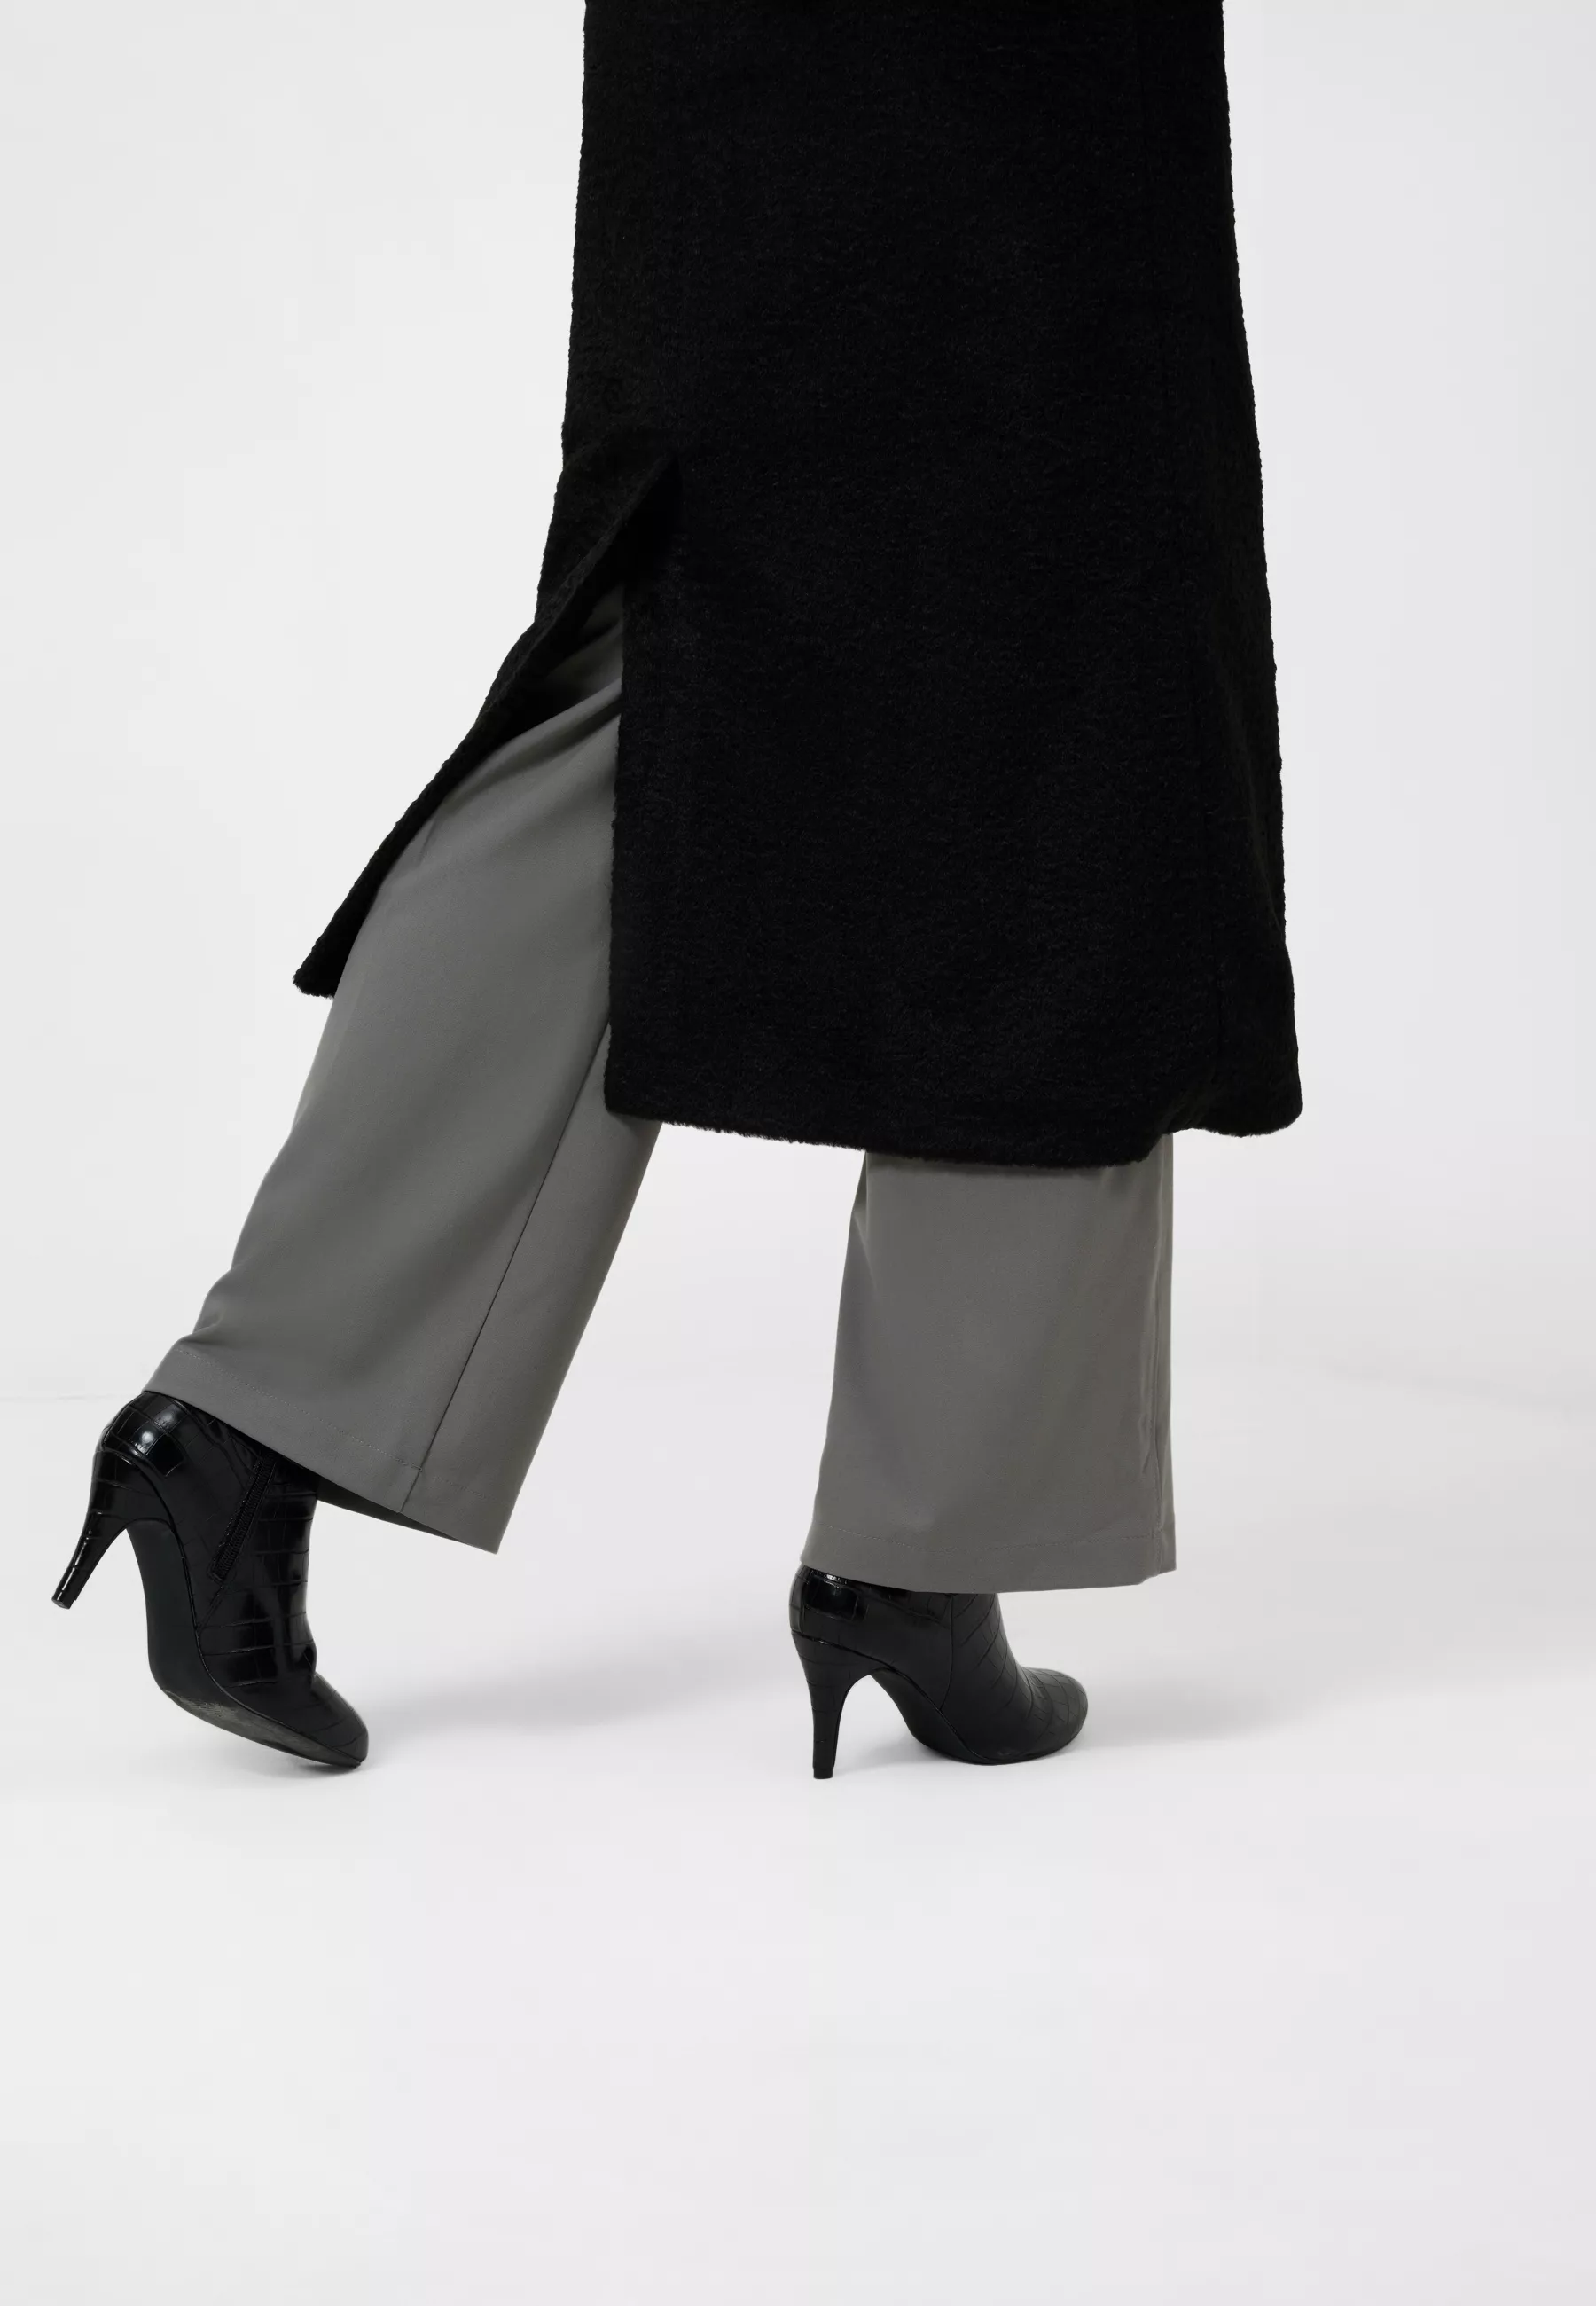 Damen Textil Mantel Pina in Schwarz von Ricano, Untenansicht am Model